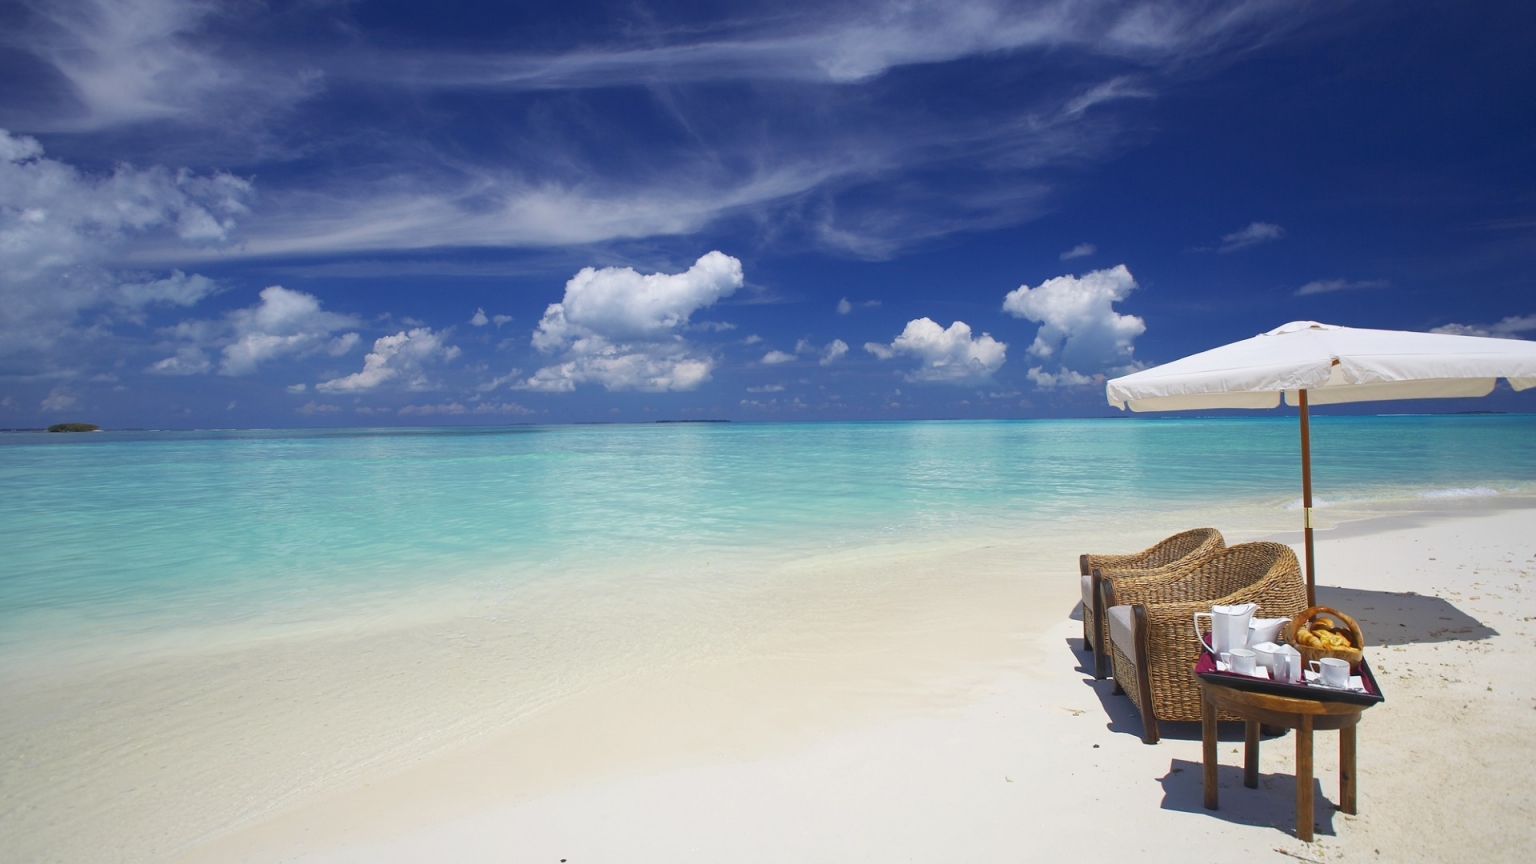 Private Beach Maldives for 1536 x 864 HDTV resolution